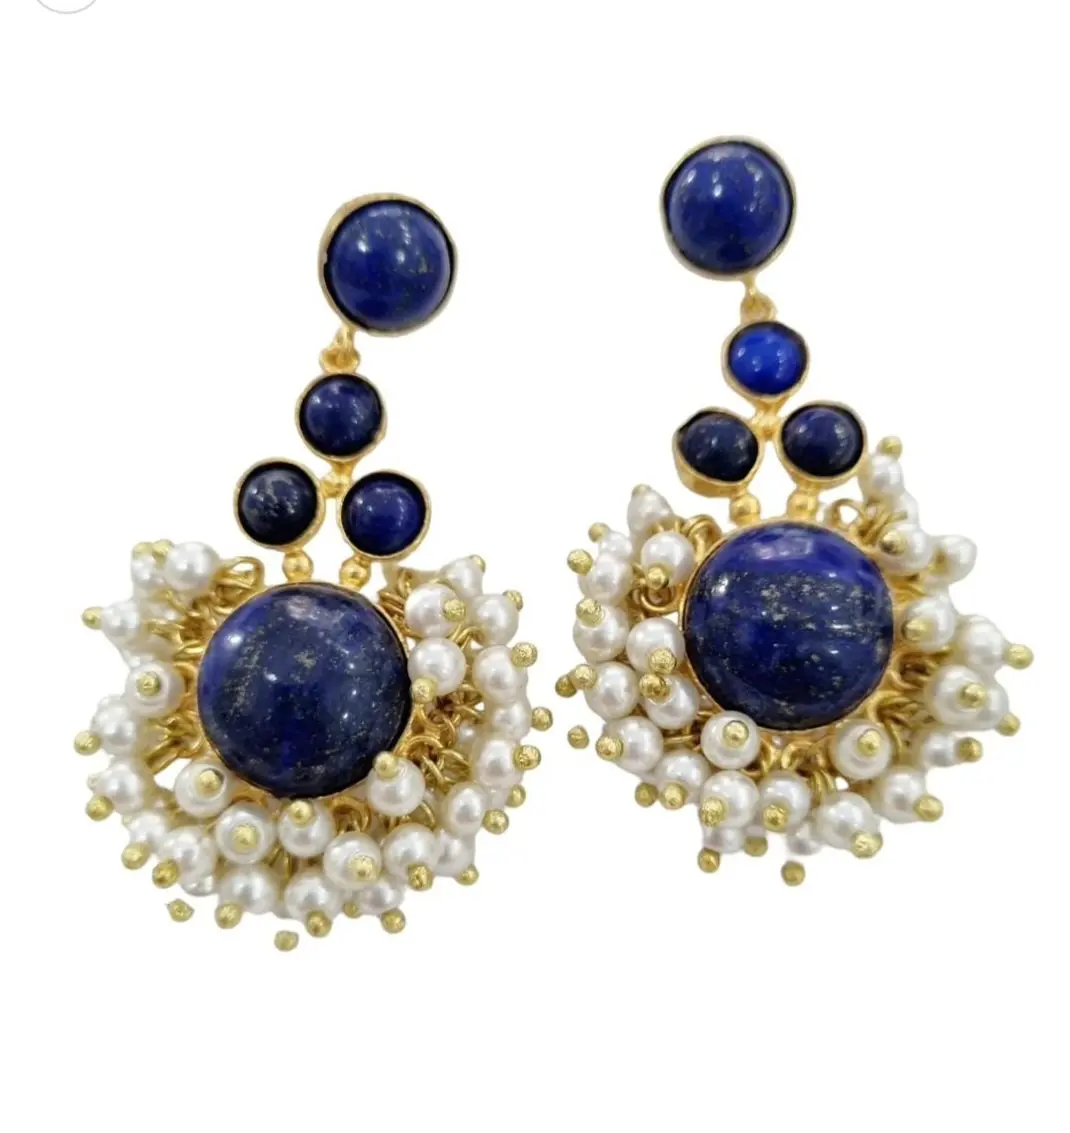 Pendientes de lapislázuli y perlas de Mallorca con latón, largo 6 cm, peso 17,6gr